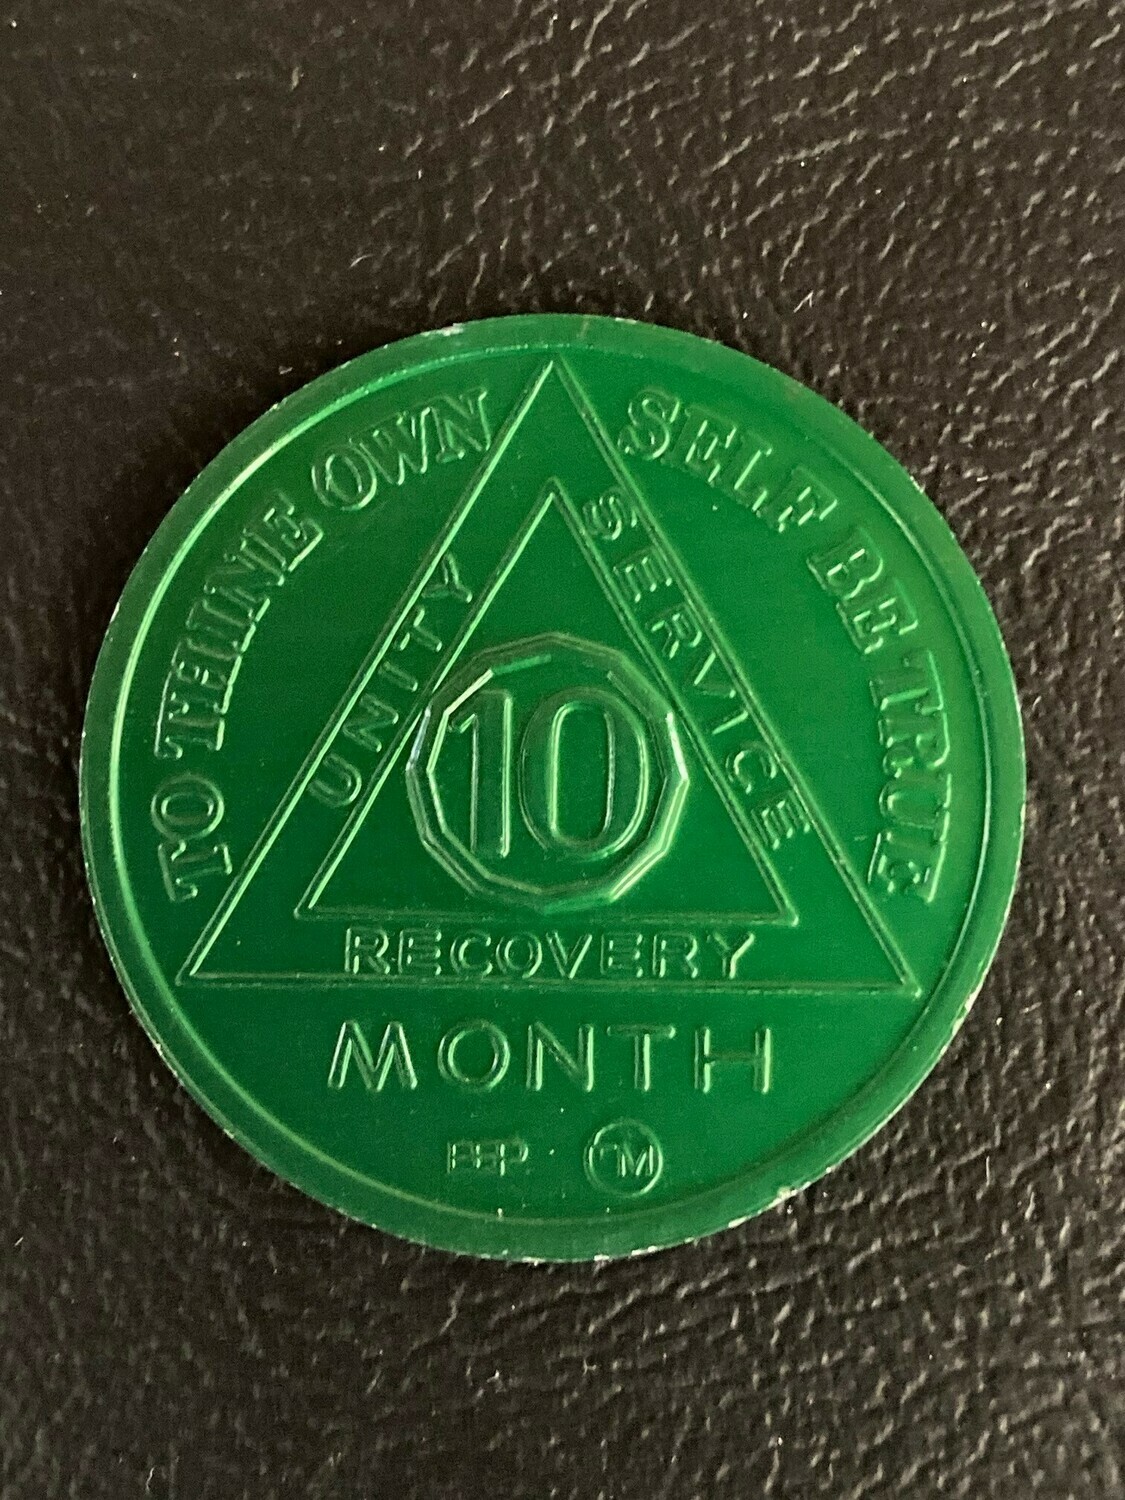 10 month aluminum medallion